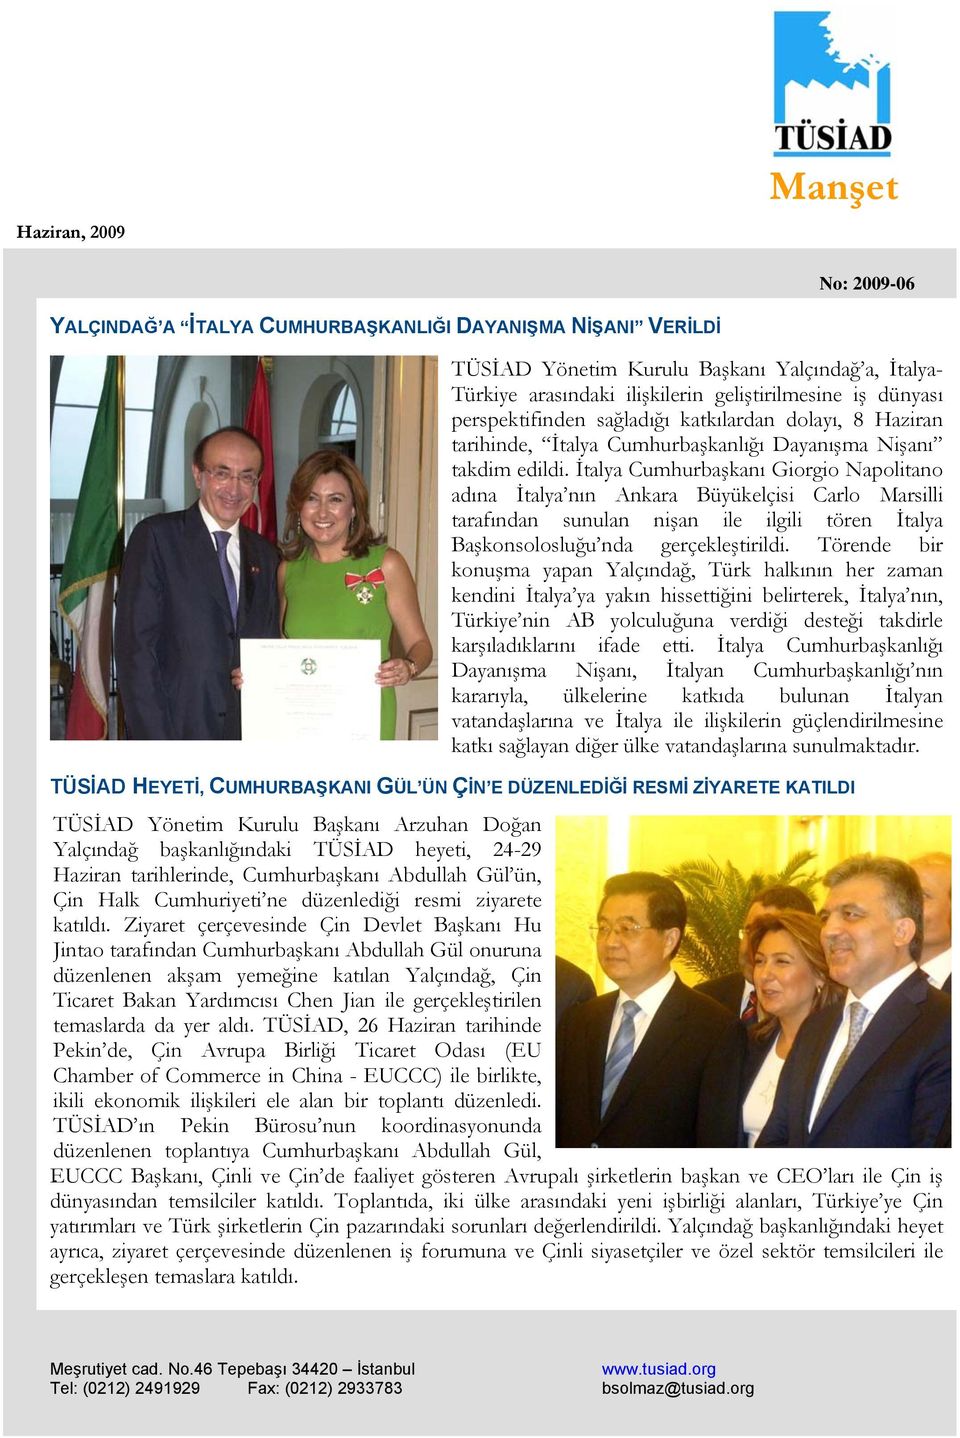 İtalya Cumhurbaşkanı Giorgio Napolitano adına İtalya nın Ankara Büyükelçisi Carlo Marsilli tarafından sunulan nişan ile ilgili tören İtalya Başkonsolosluğu nda gerçekleştirildi.